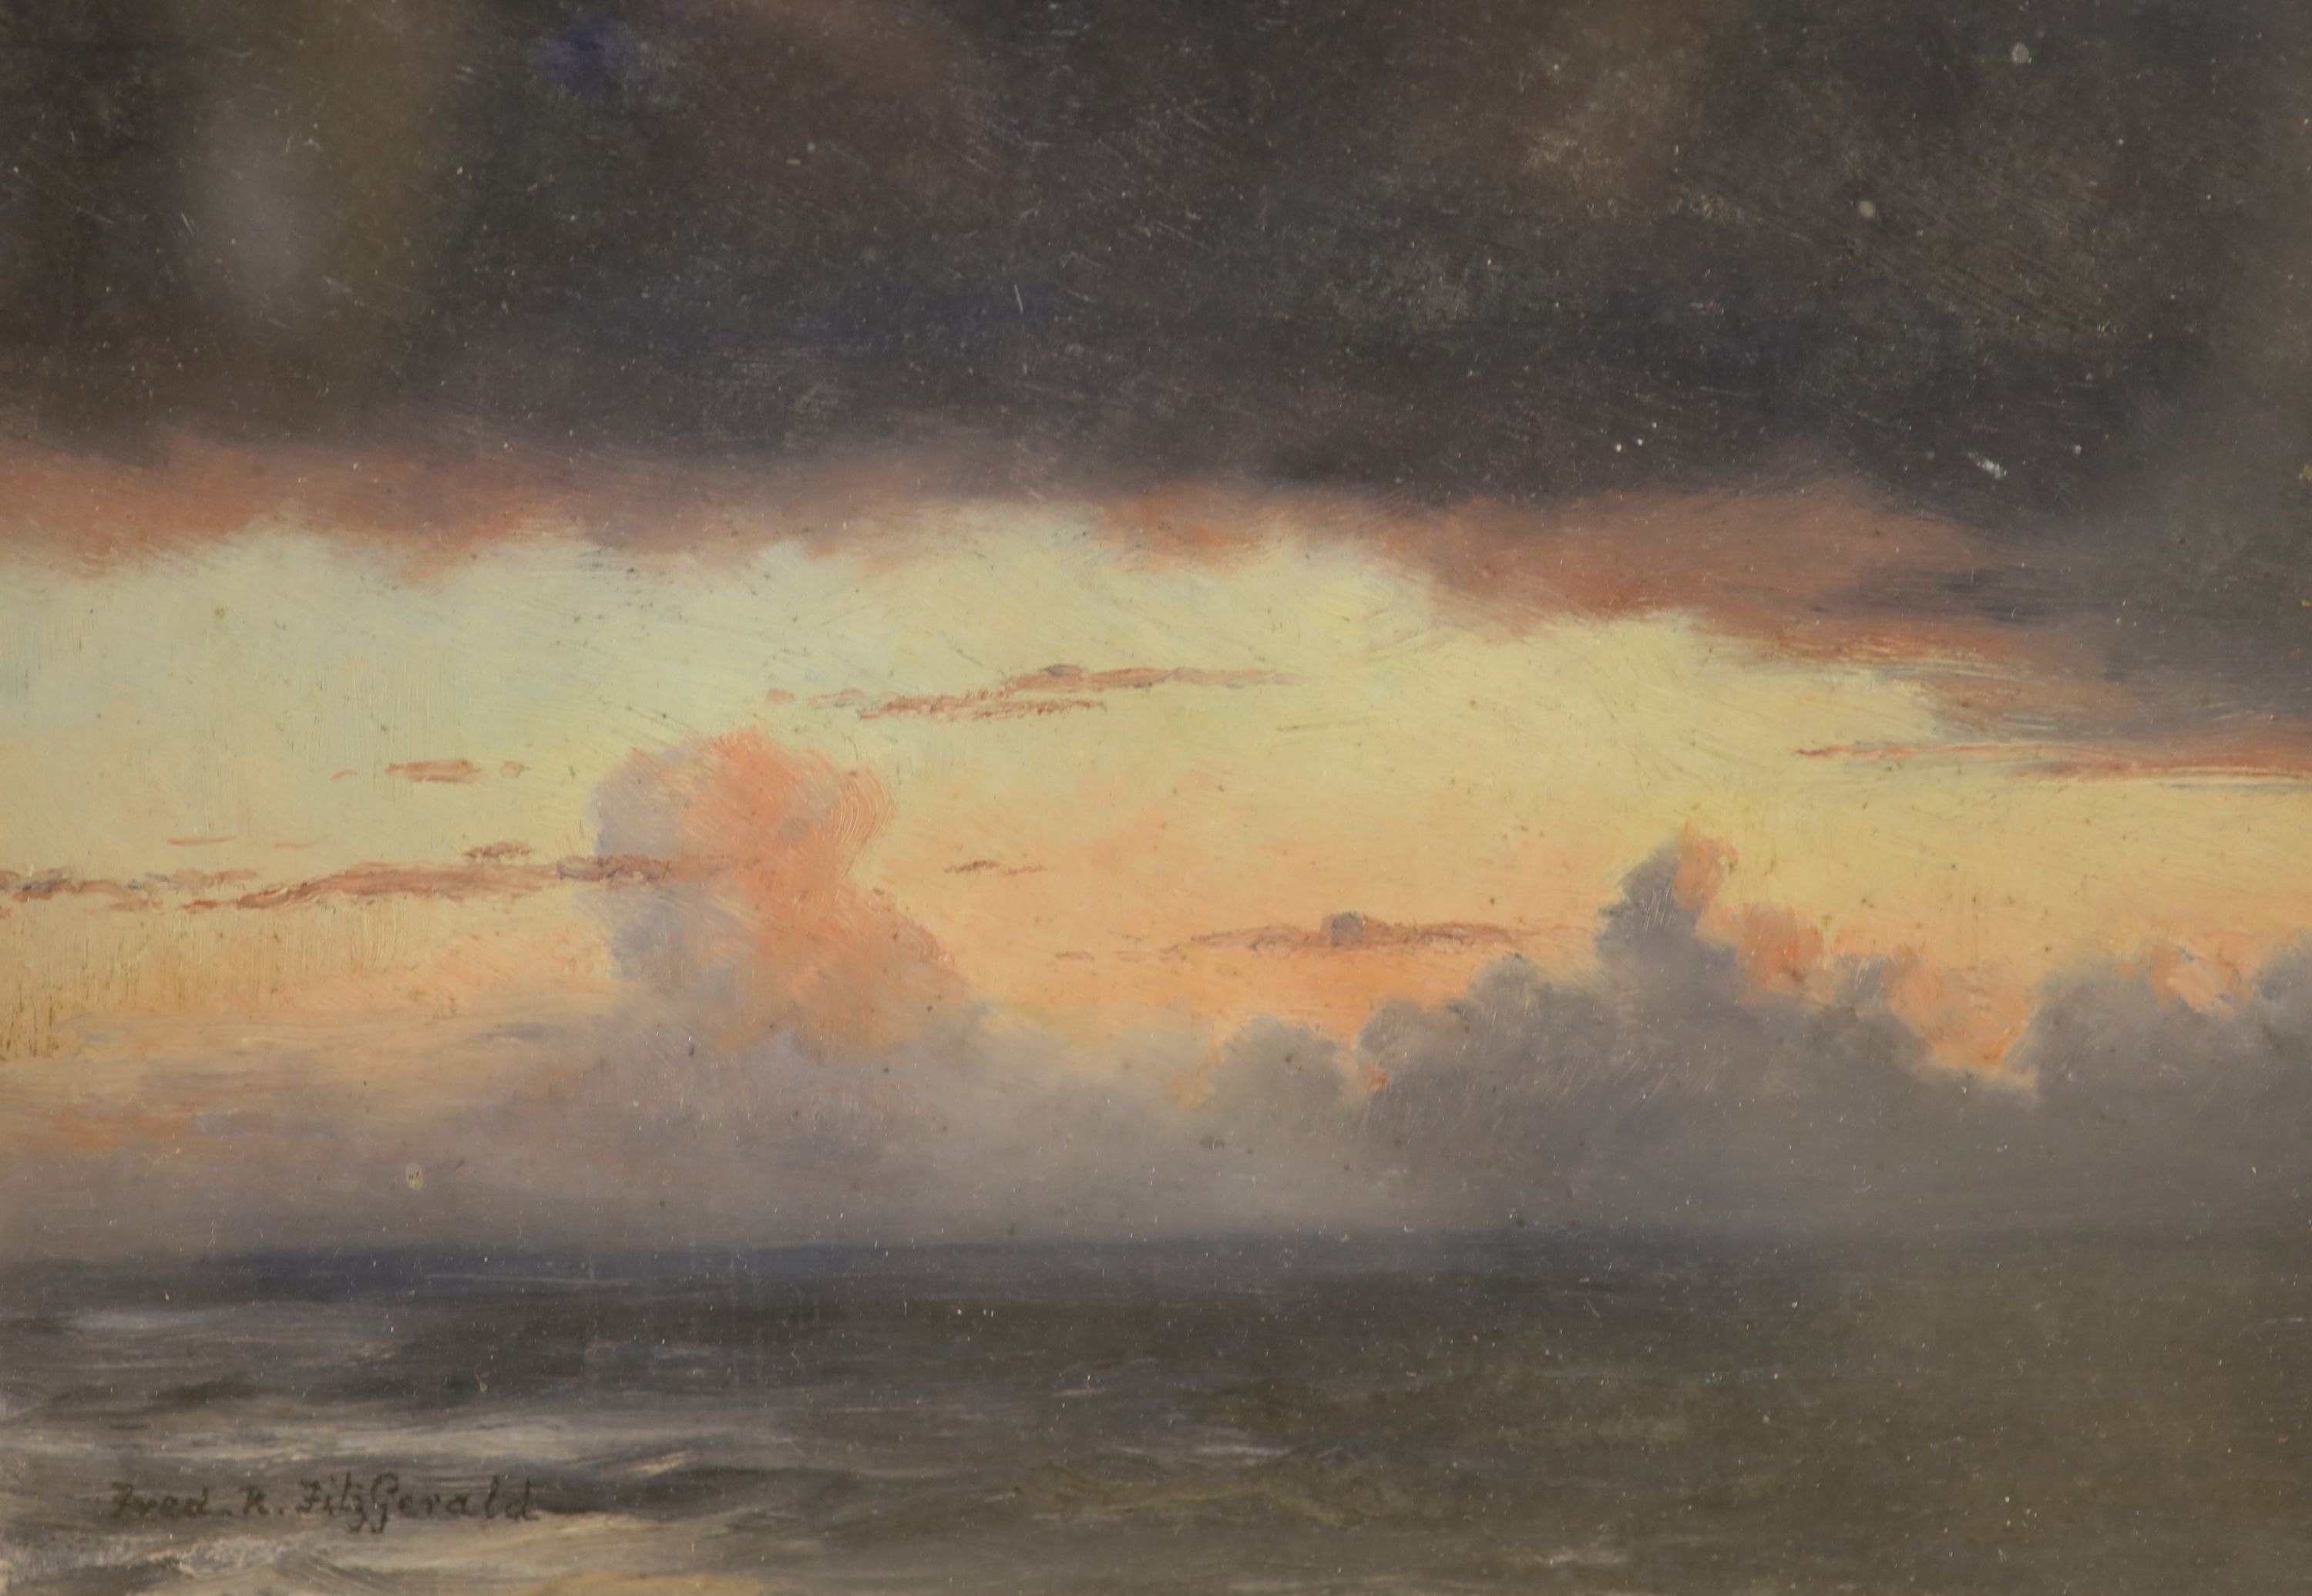 Frederick R. Fitzgerald (1869-1944), oil sketch, Clouds in sunset, 17 x 24cm